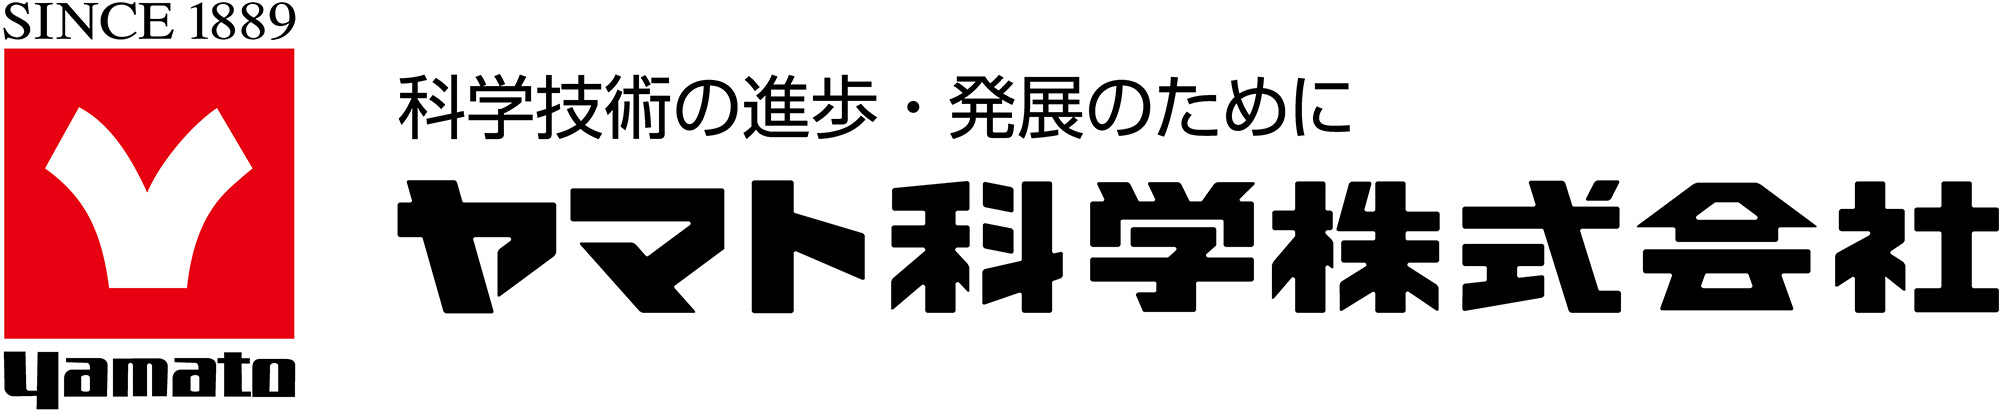 ヤマト科学ロゴ (1)